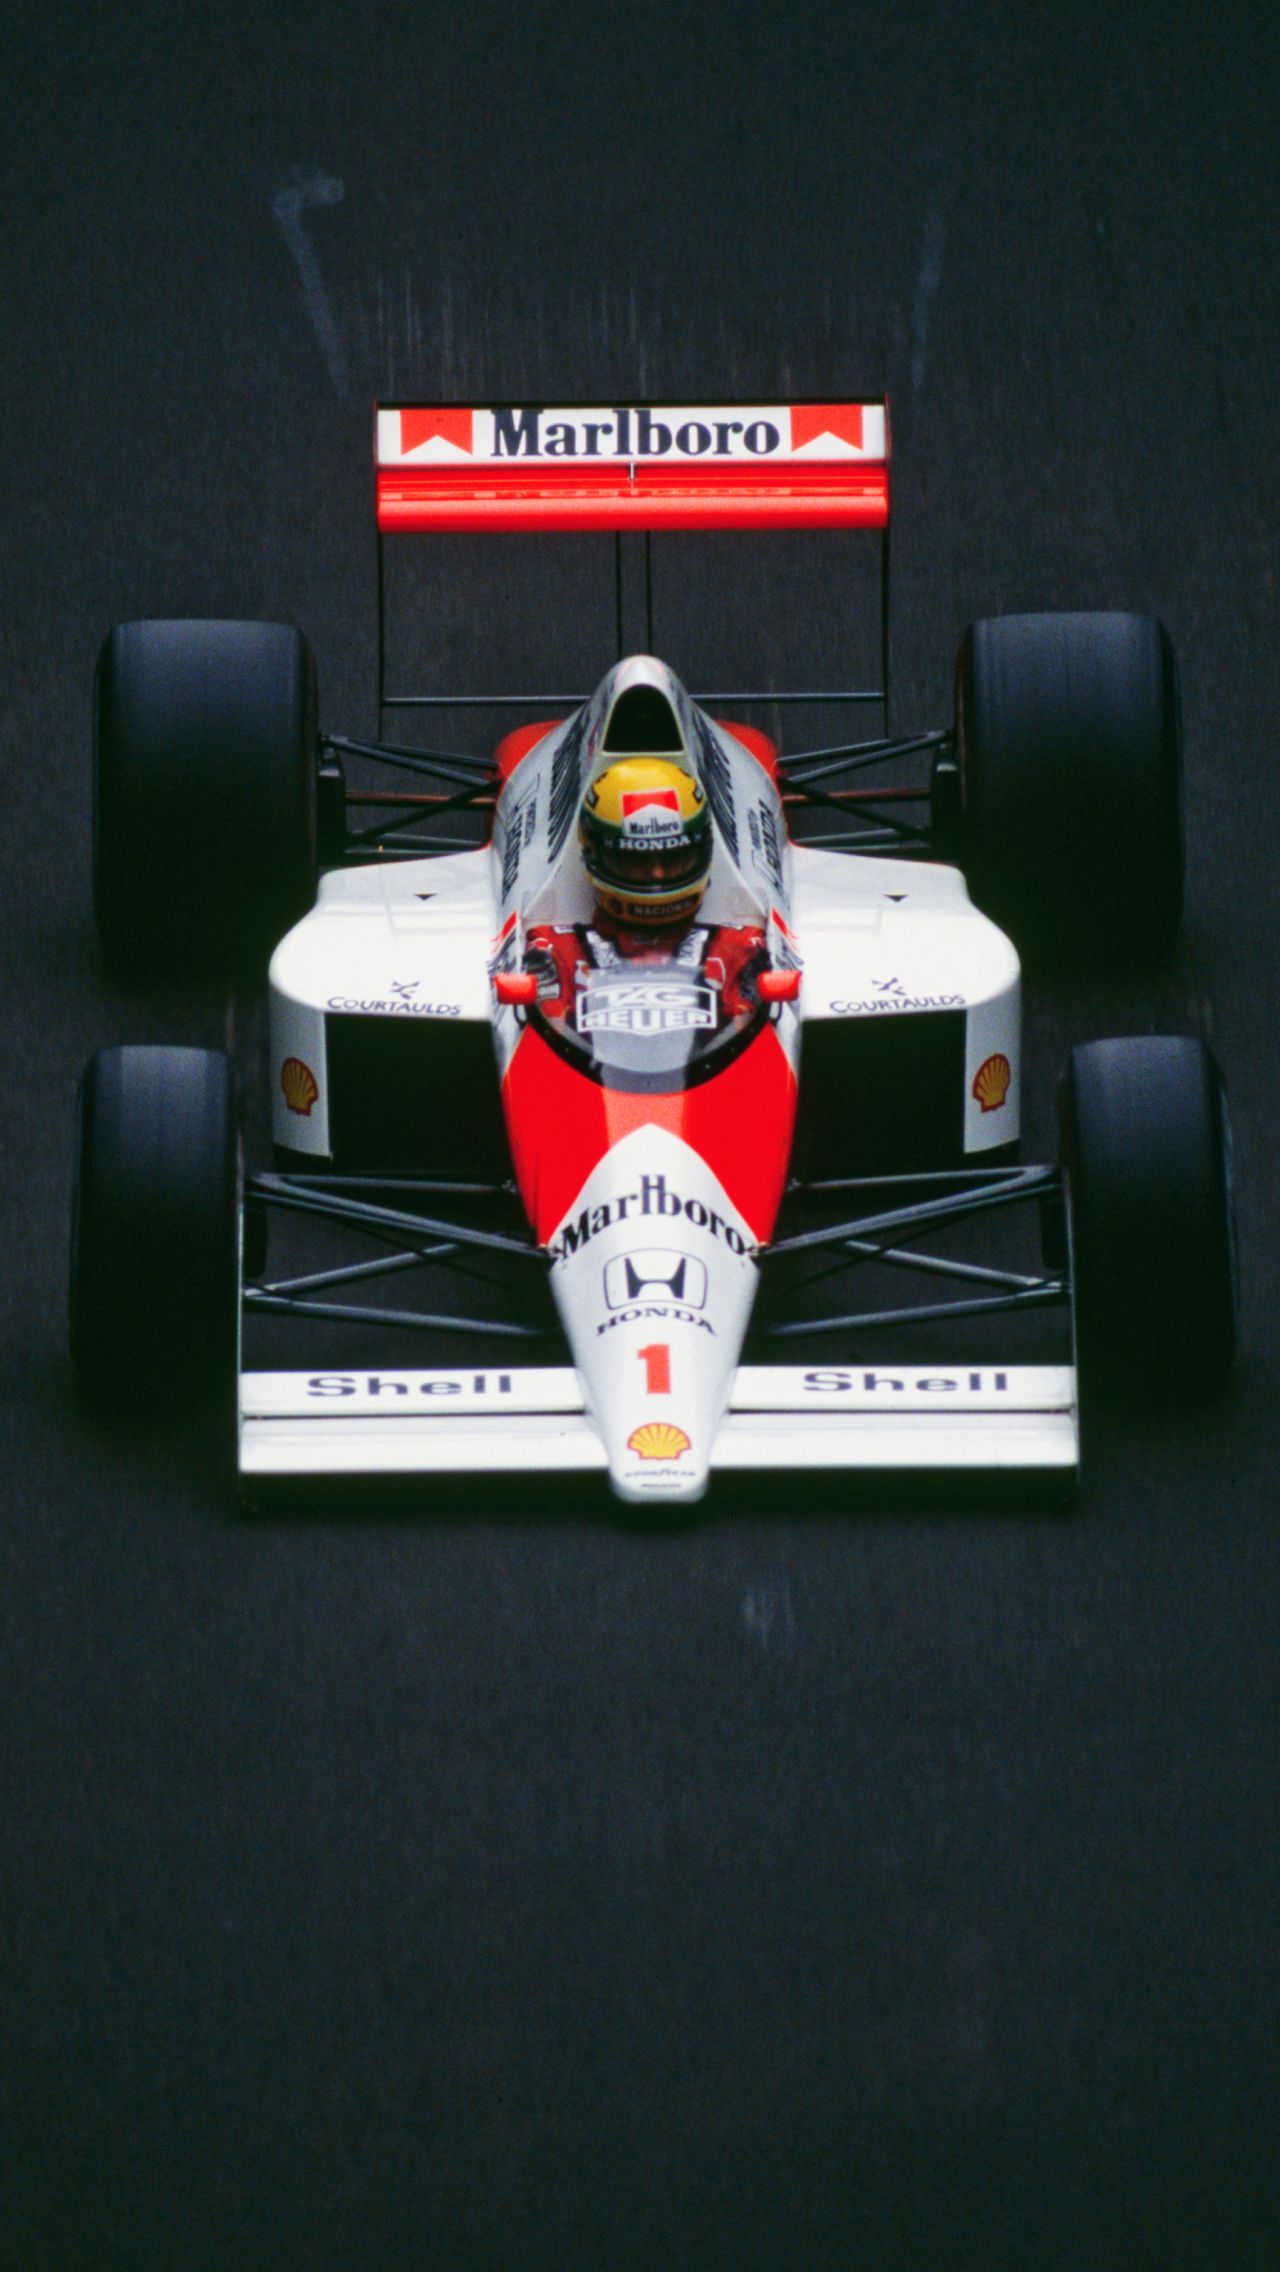 «Макларен»-1989 — 10 побед в 16 гонках (62,5%)